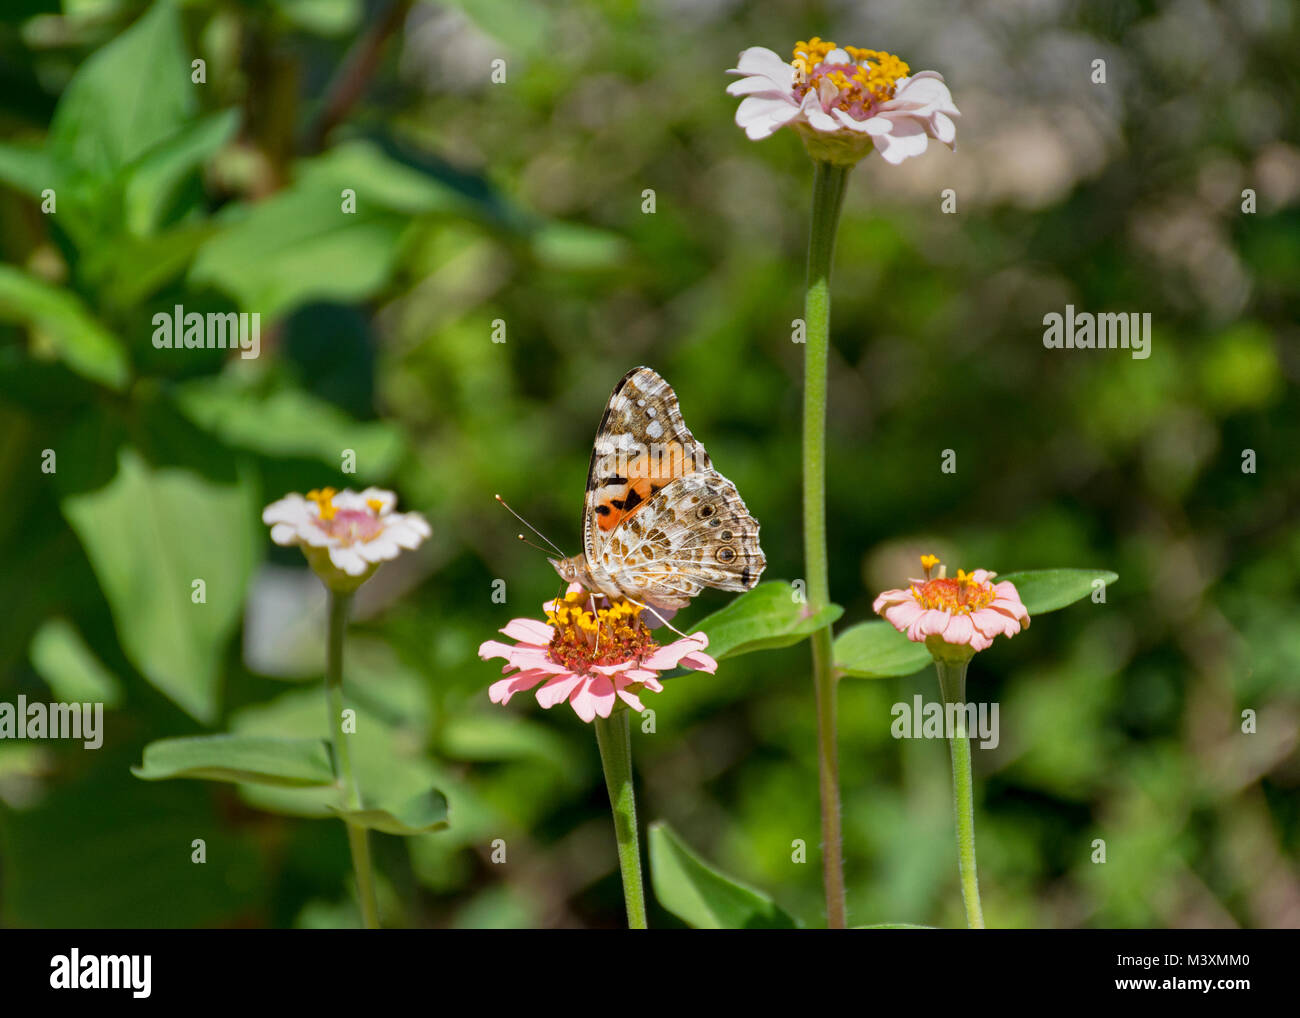 Profil der bemalten Dame Schmetterling mit geschlossenen Flügeln Fütterung auf zinnia Blume mit einem grünen unscharfen Hintergrund Stockfoto